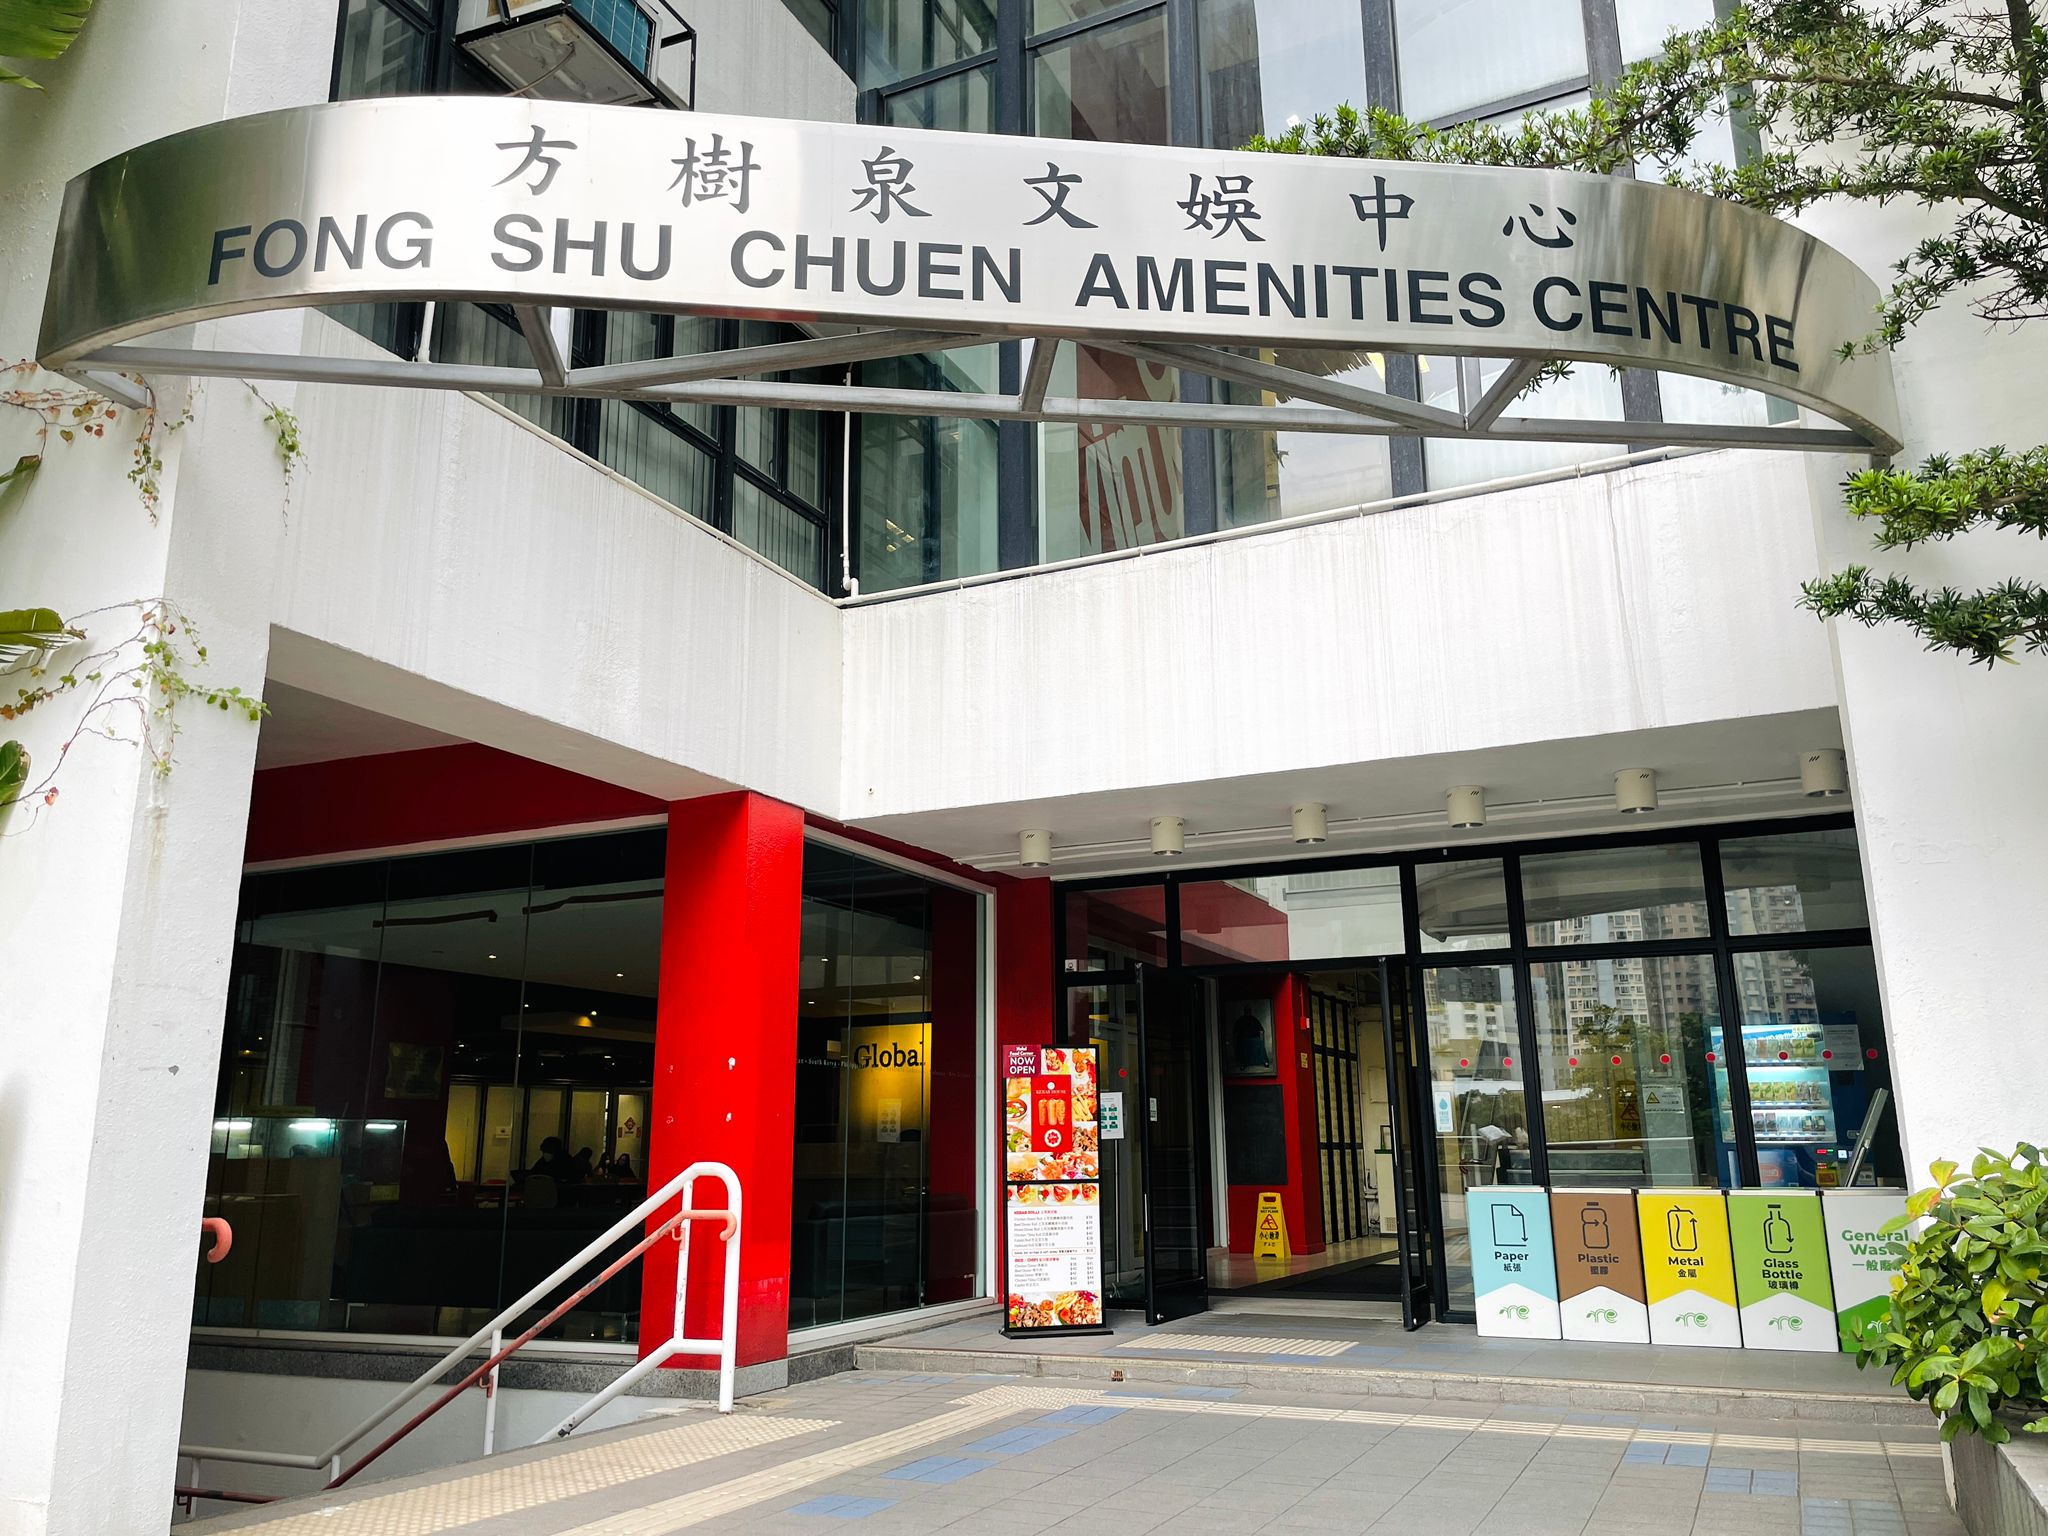 Fong Shu Chuen Amenities Centre